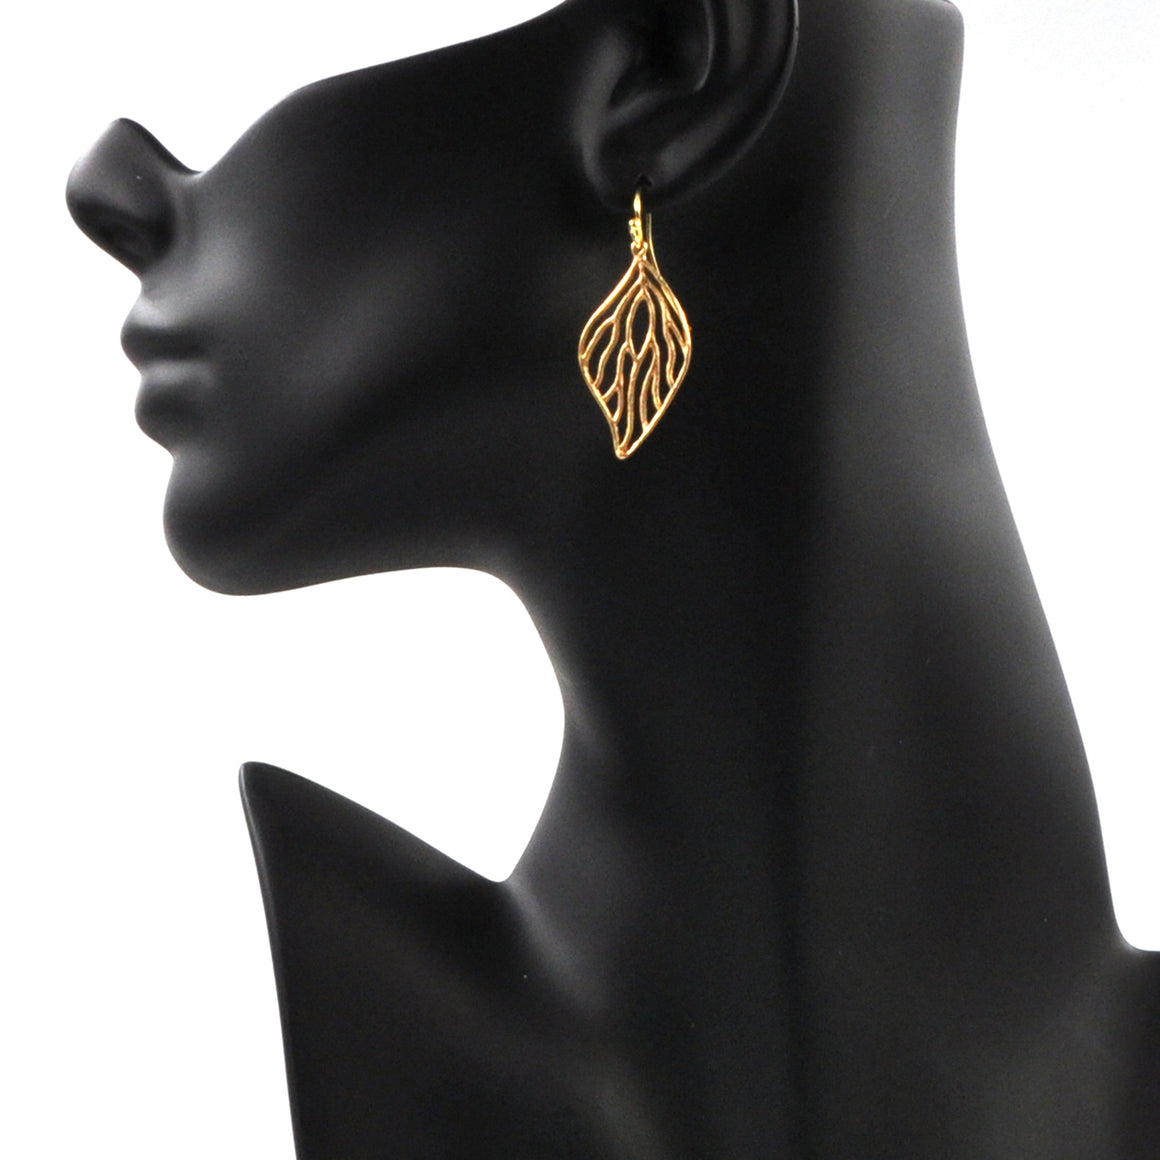 Open Leaf Earrings - 24K Gold Plated